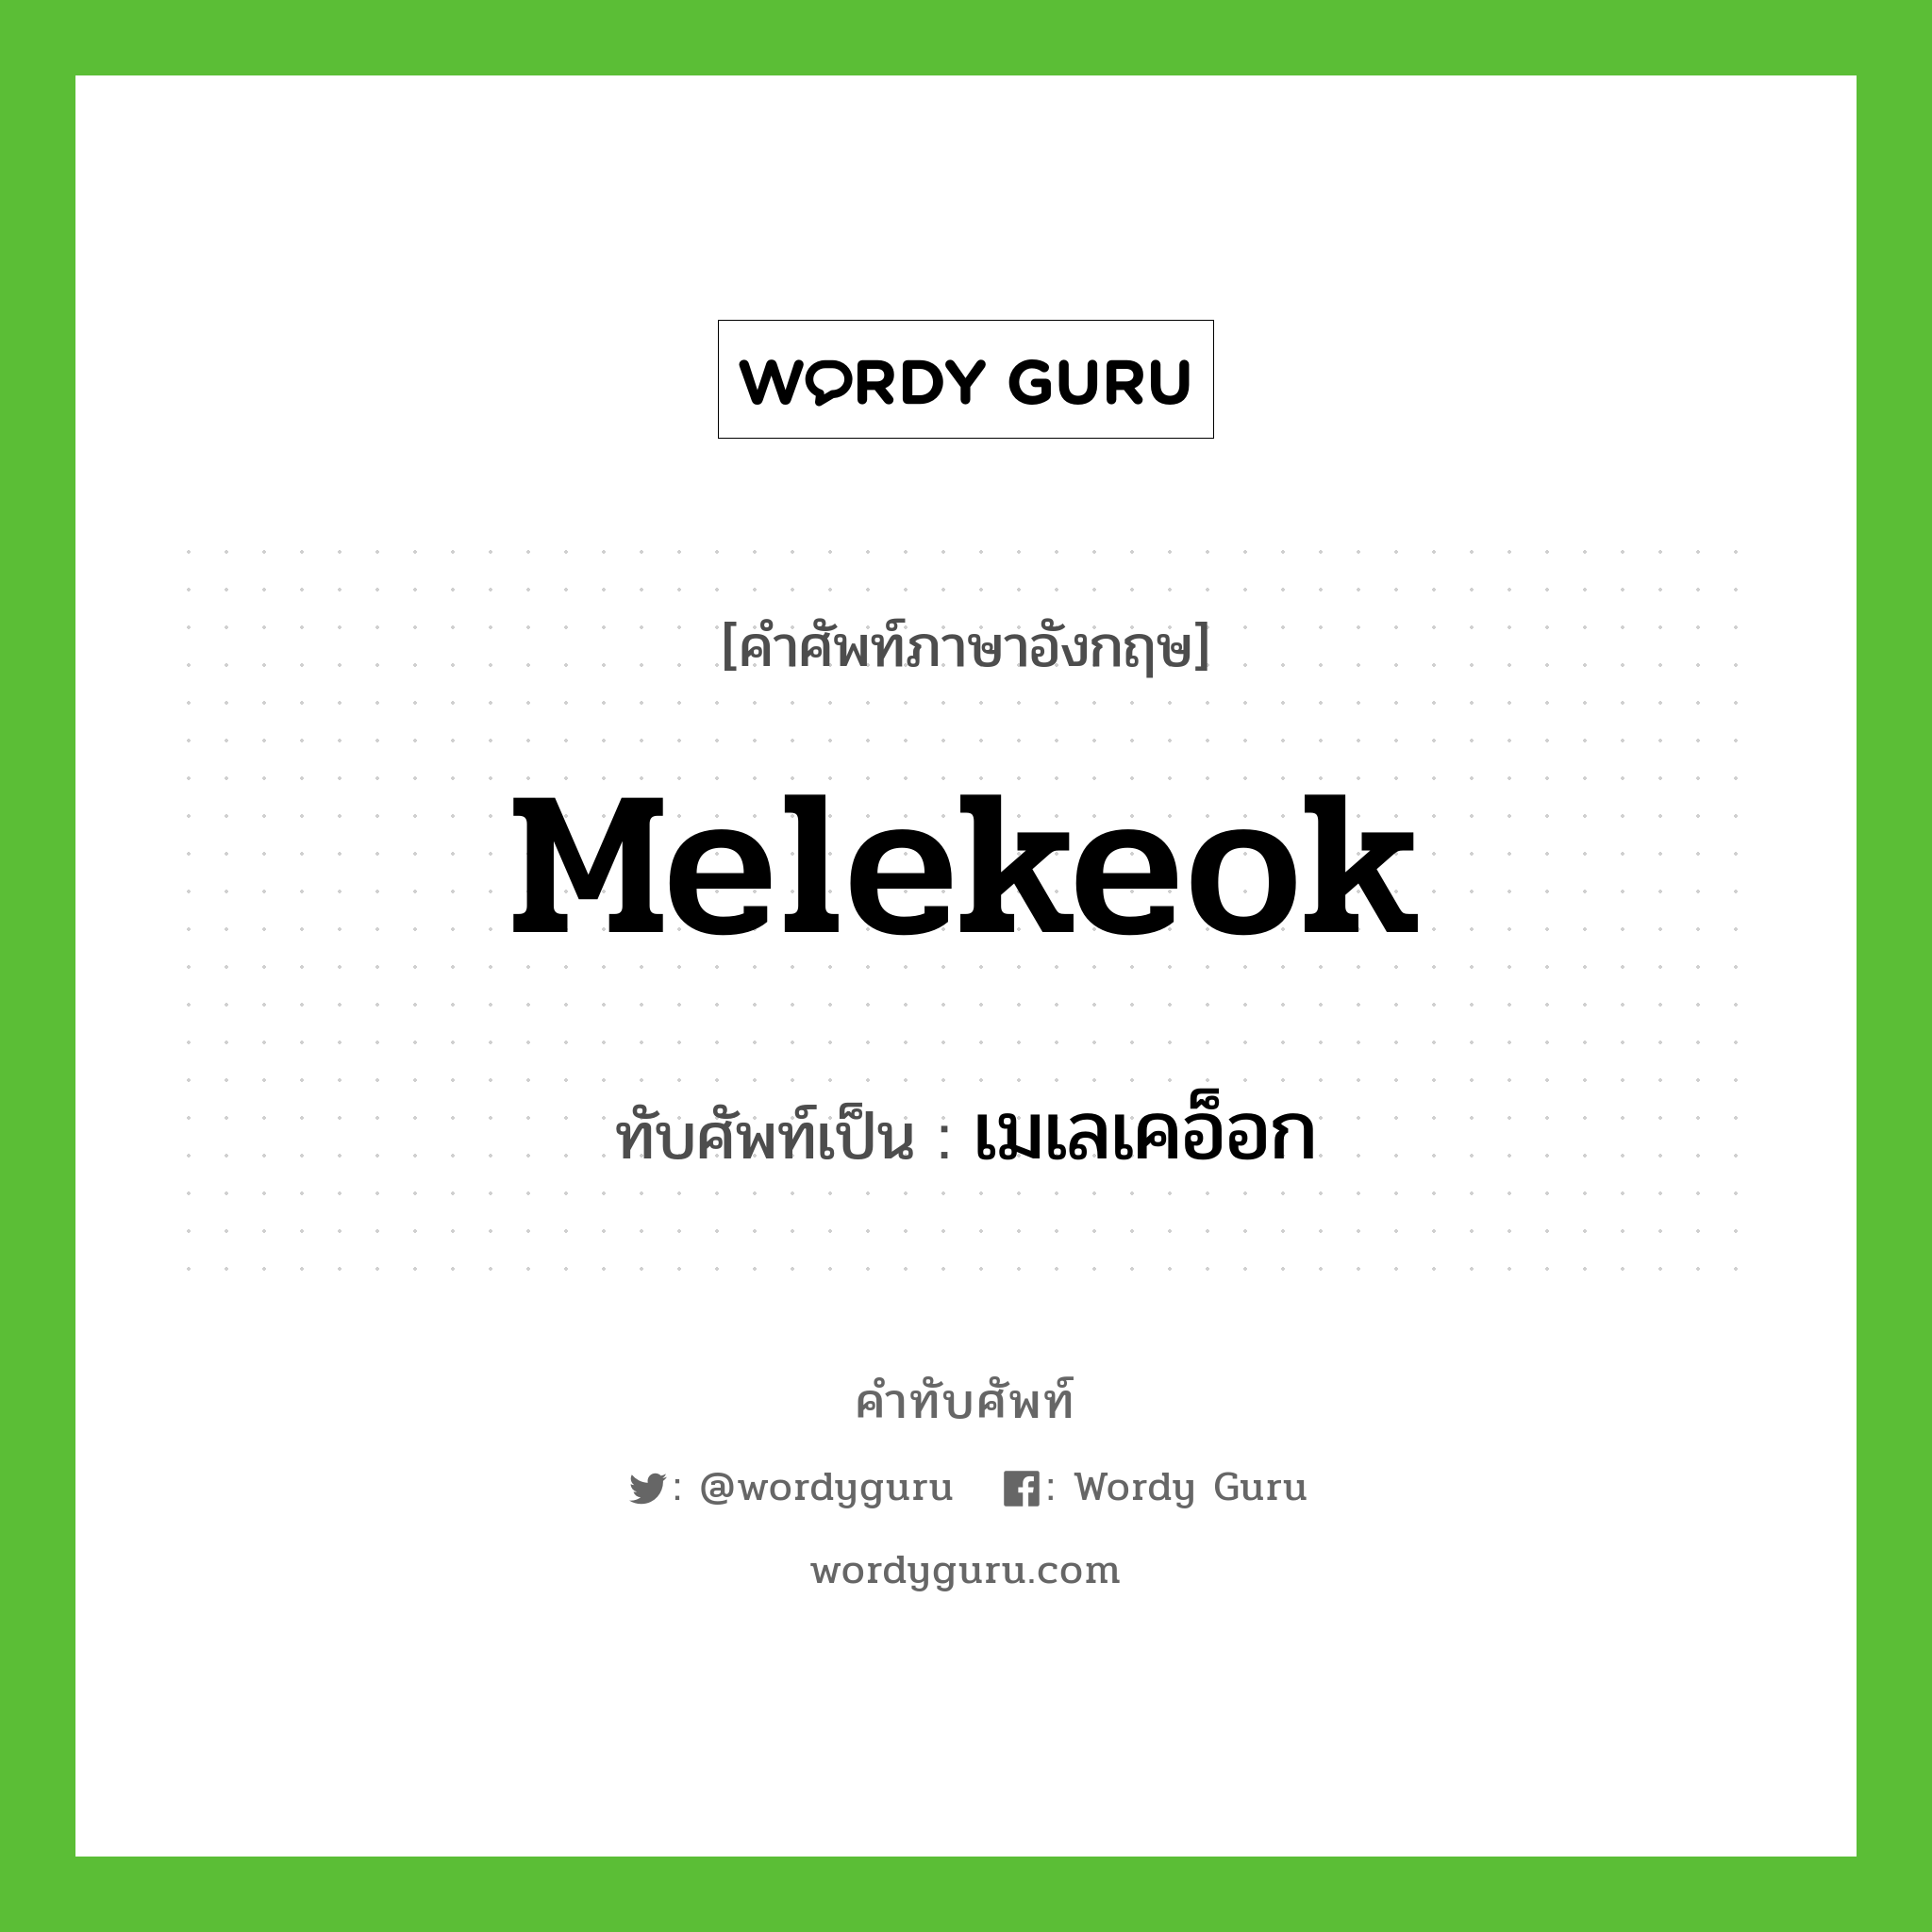 Melekeok เขียนเป็นคำไทยว่าอะไร?, คำศัพท์ภาษาอังกฤษ Melekeok ทับศัพท์เป็น เมเลเคอ็อก